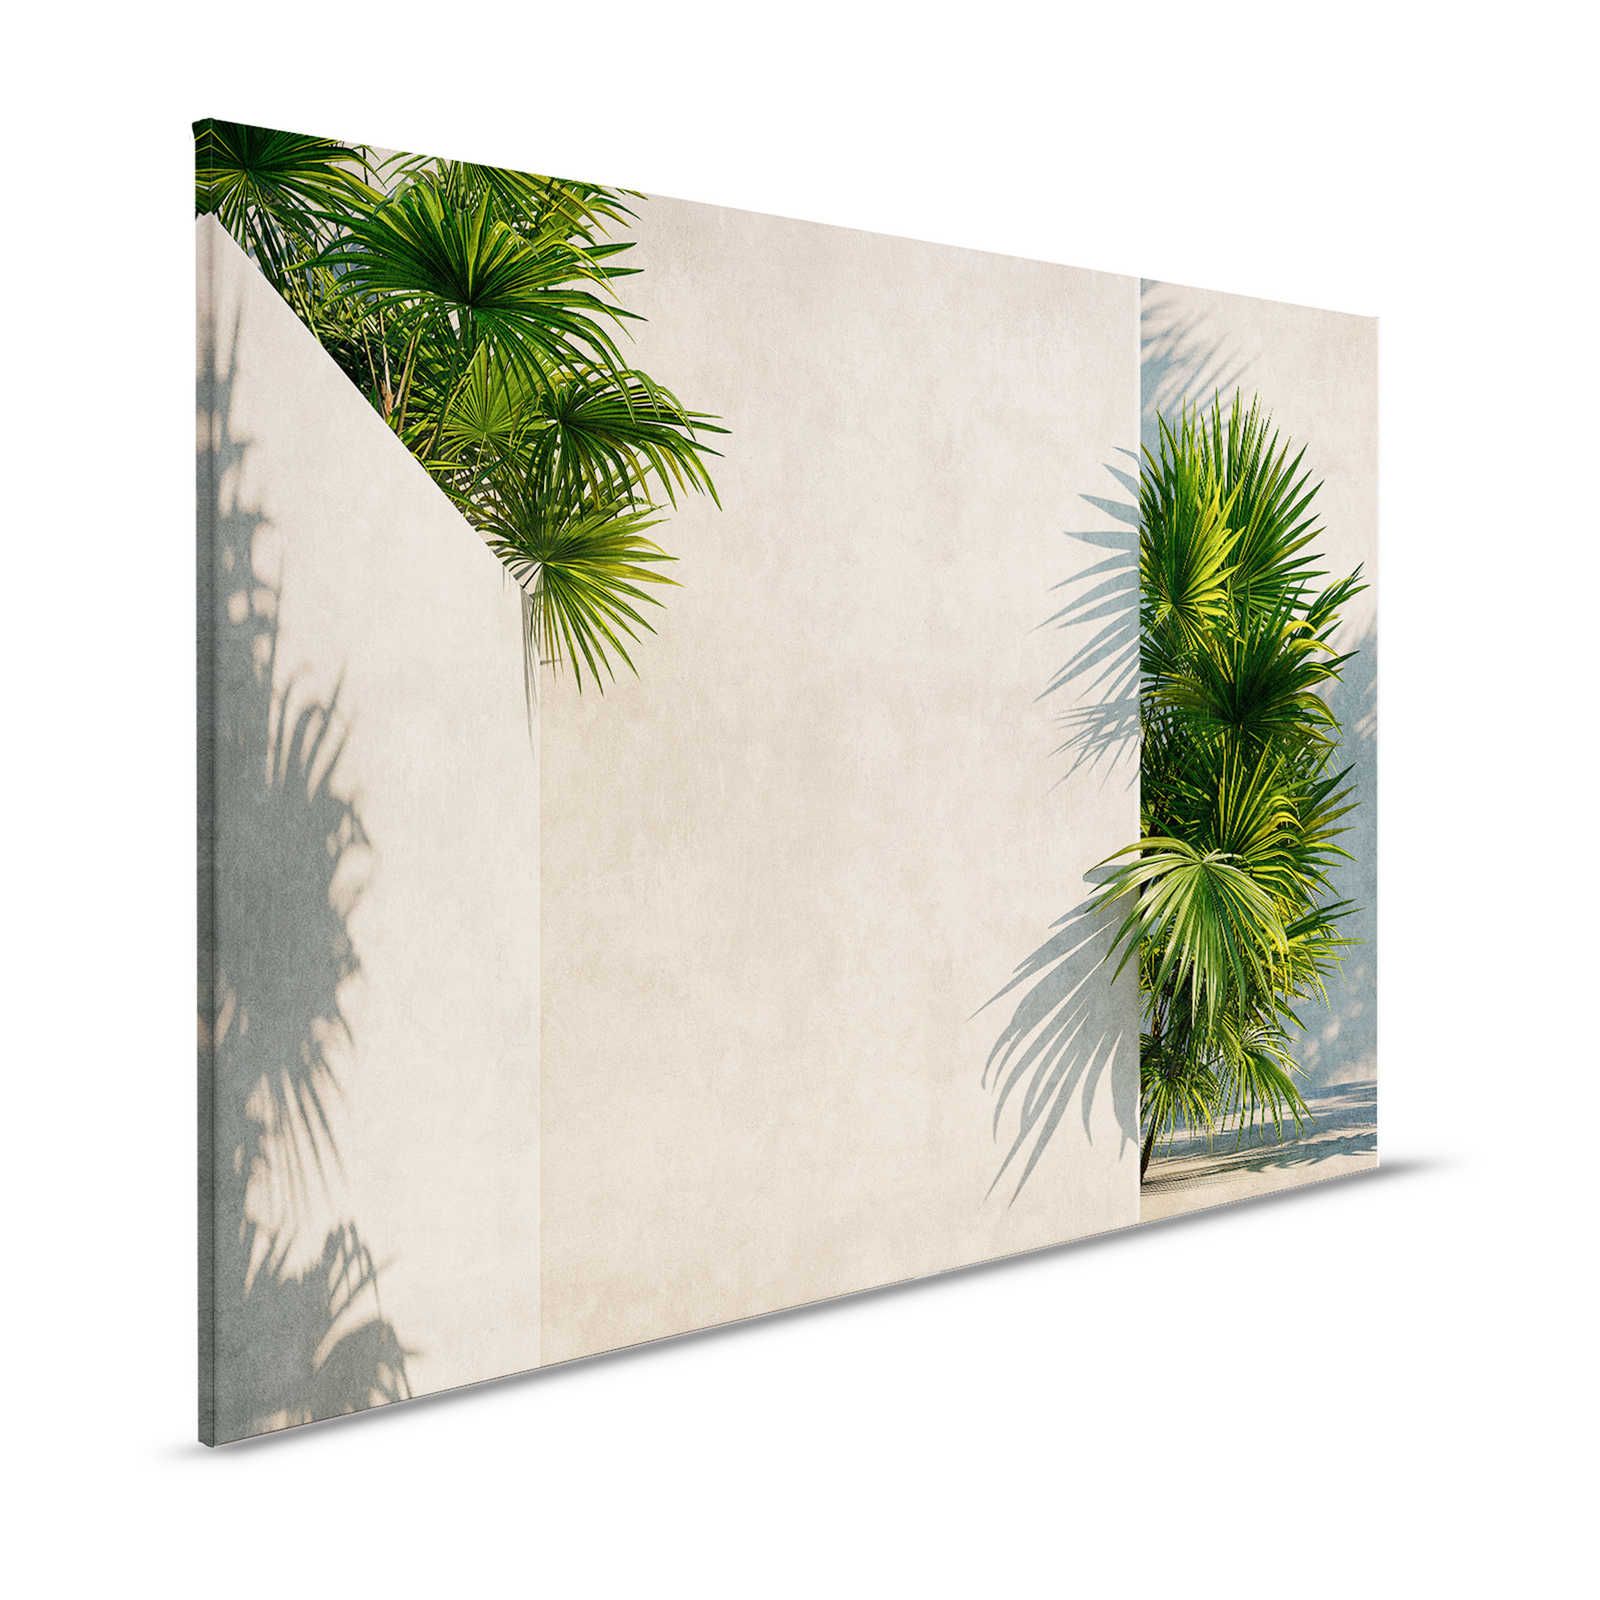 Tunis 1 - Toile Palmiers dans une cour intérieure avec murs en plâtre - 1,20 m x 0,80 m
